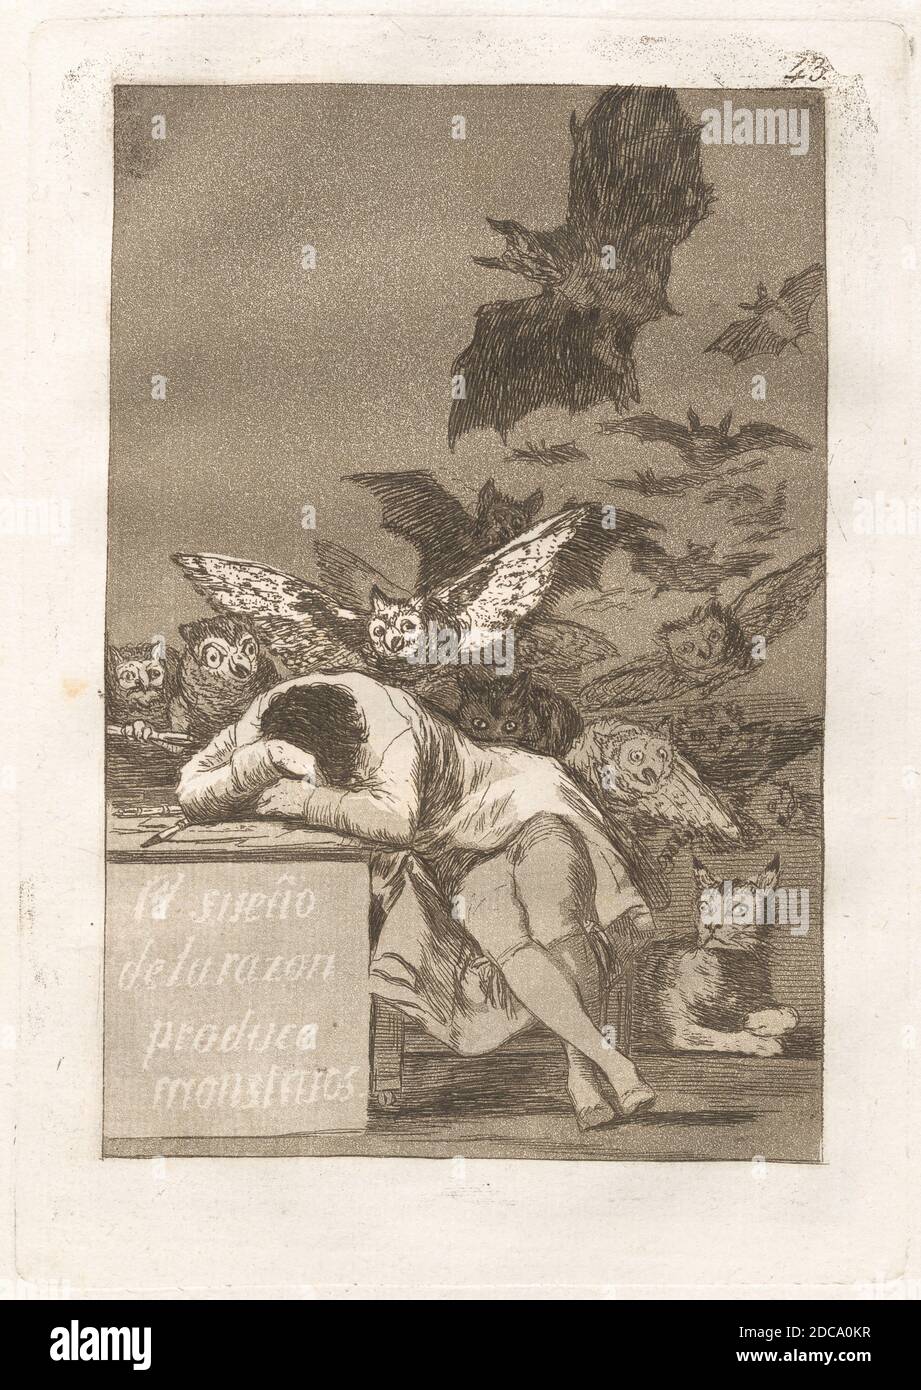 Francisco de Goya, (artista), Spagnolo, 1746 - 1828, El sueño de la razon produce mostruos (il sonno della ragione produce mostri), Los Caprichos (piatto 43), (serie), pubblicato nel 1799, acquaforte e acquatinto, piatto: 21.4 x 15.1 cm (8 7/16 x 5 15/16 pollici), dimensioni pagina: 30.7 x 19.5 cm (12 1/16 x 7 11/16 pollici Foto Stock